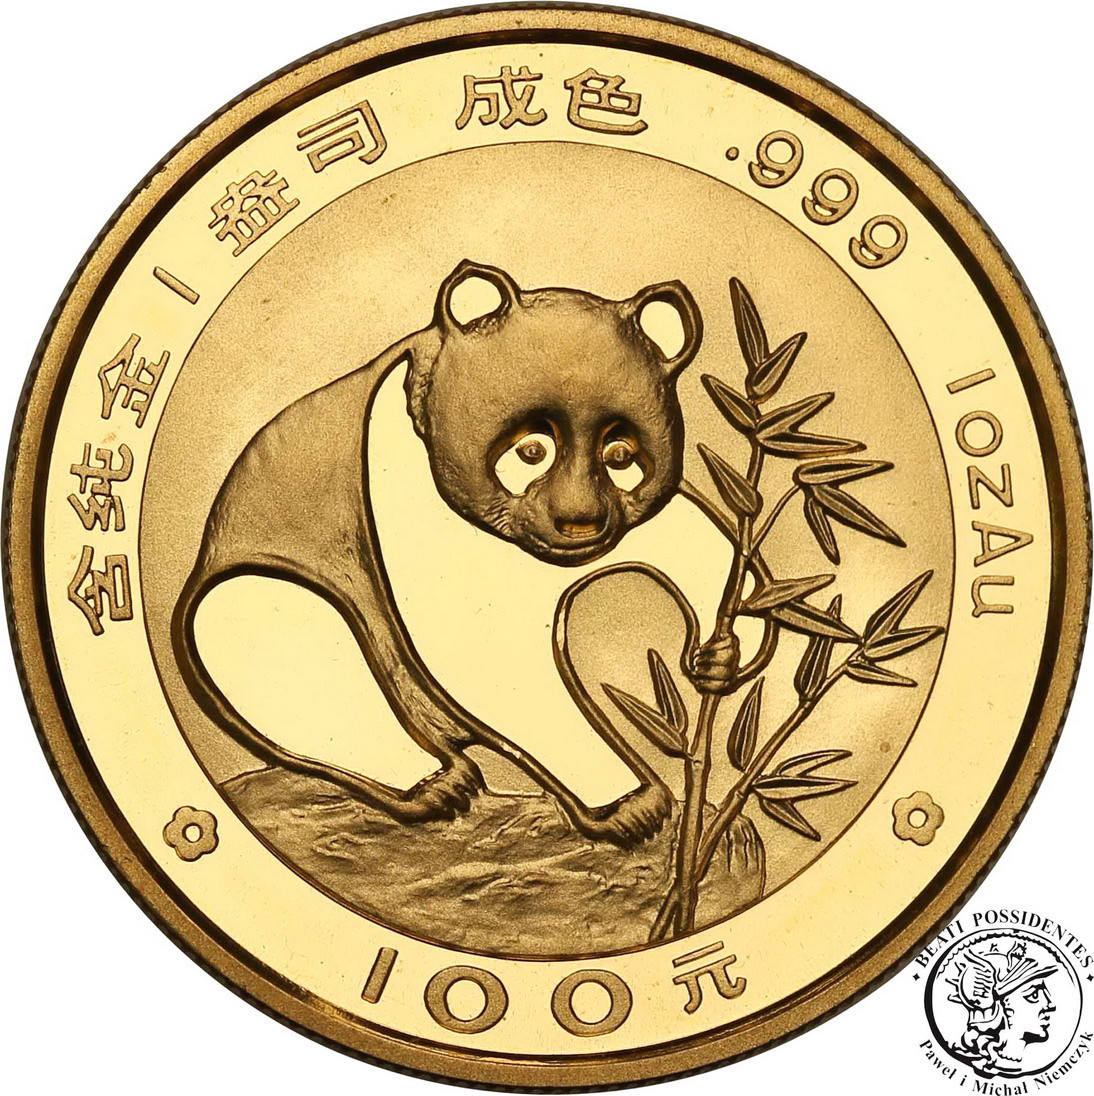 Chiny 100 Yuan 1988 Panda RZADKIE - STEMPEL LUSTRZANY (uncja czystego złota)